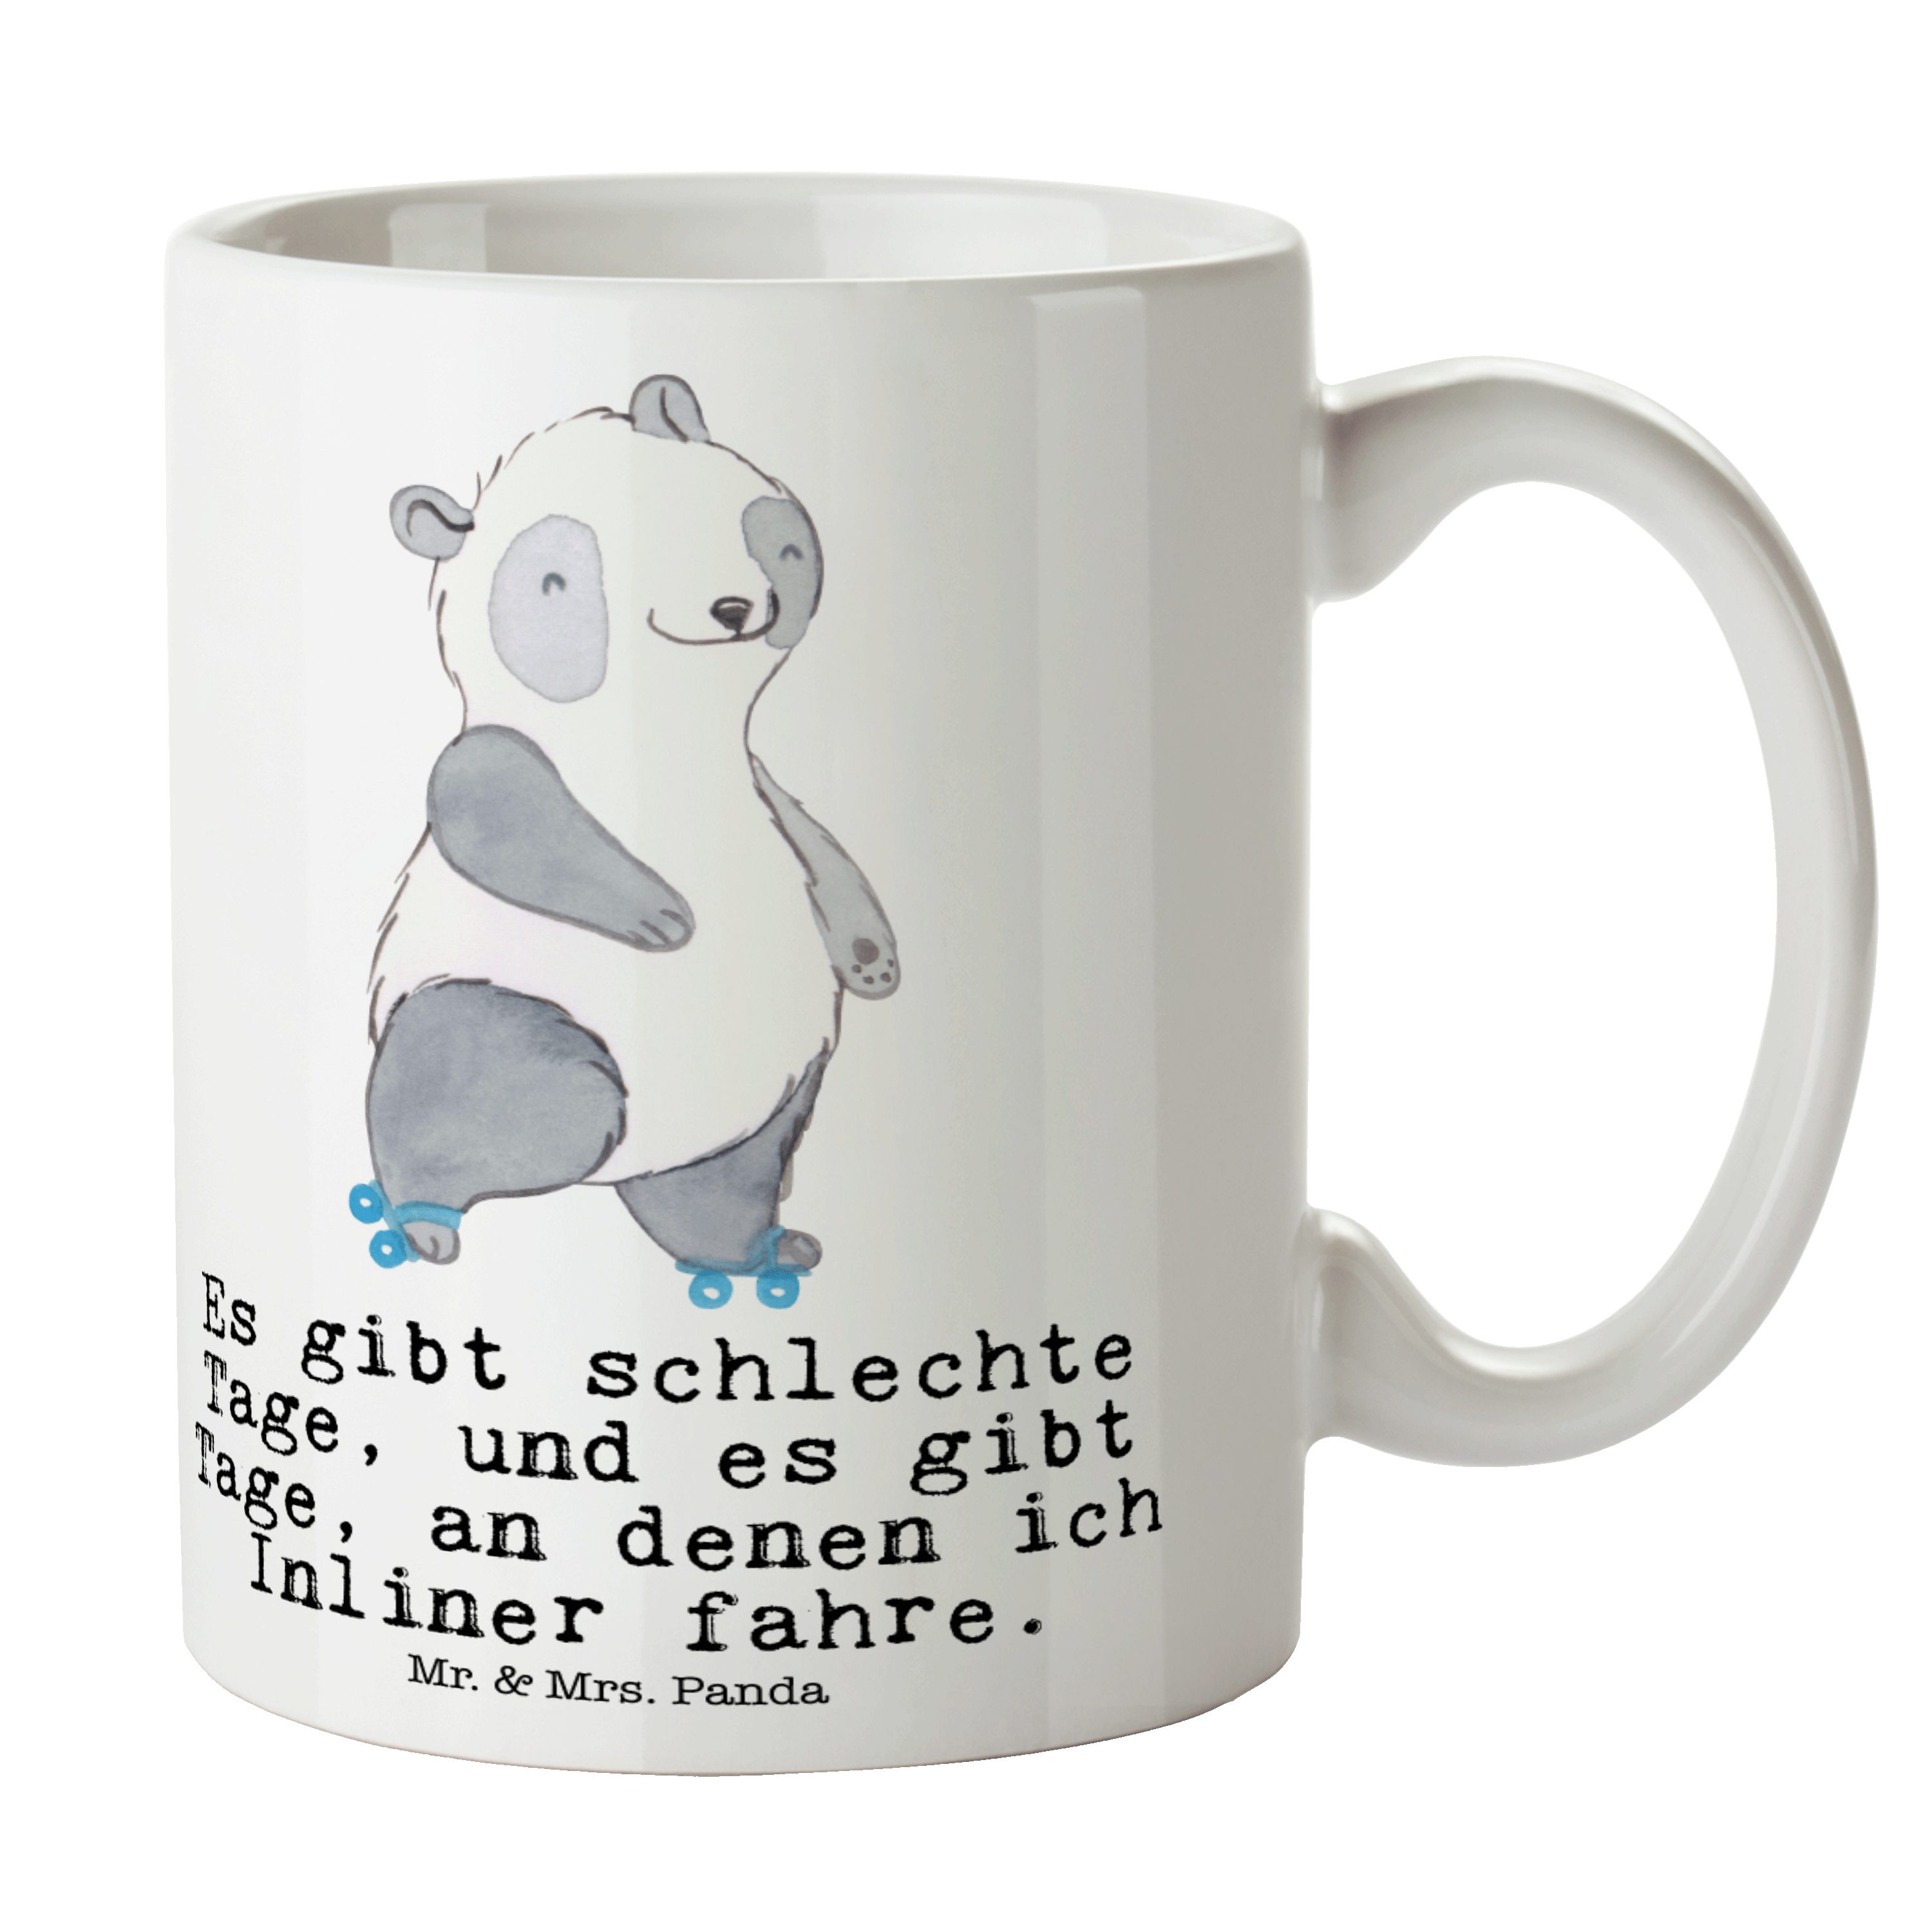 Mr. & Mrs. Panda Tasse Panda Inliner fahren Tage - Weiß - Geschenk, Geschenk Tasse, Keramikt, Keramik